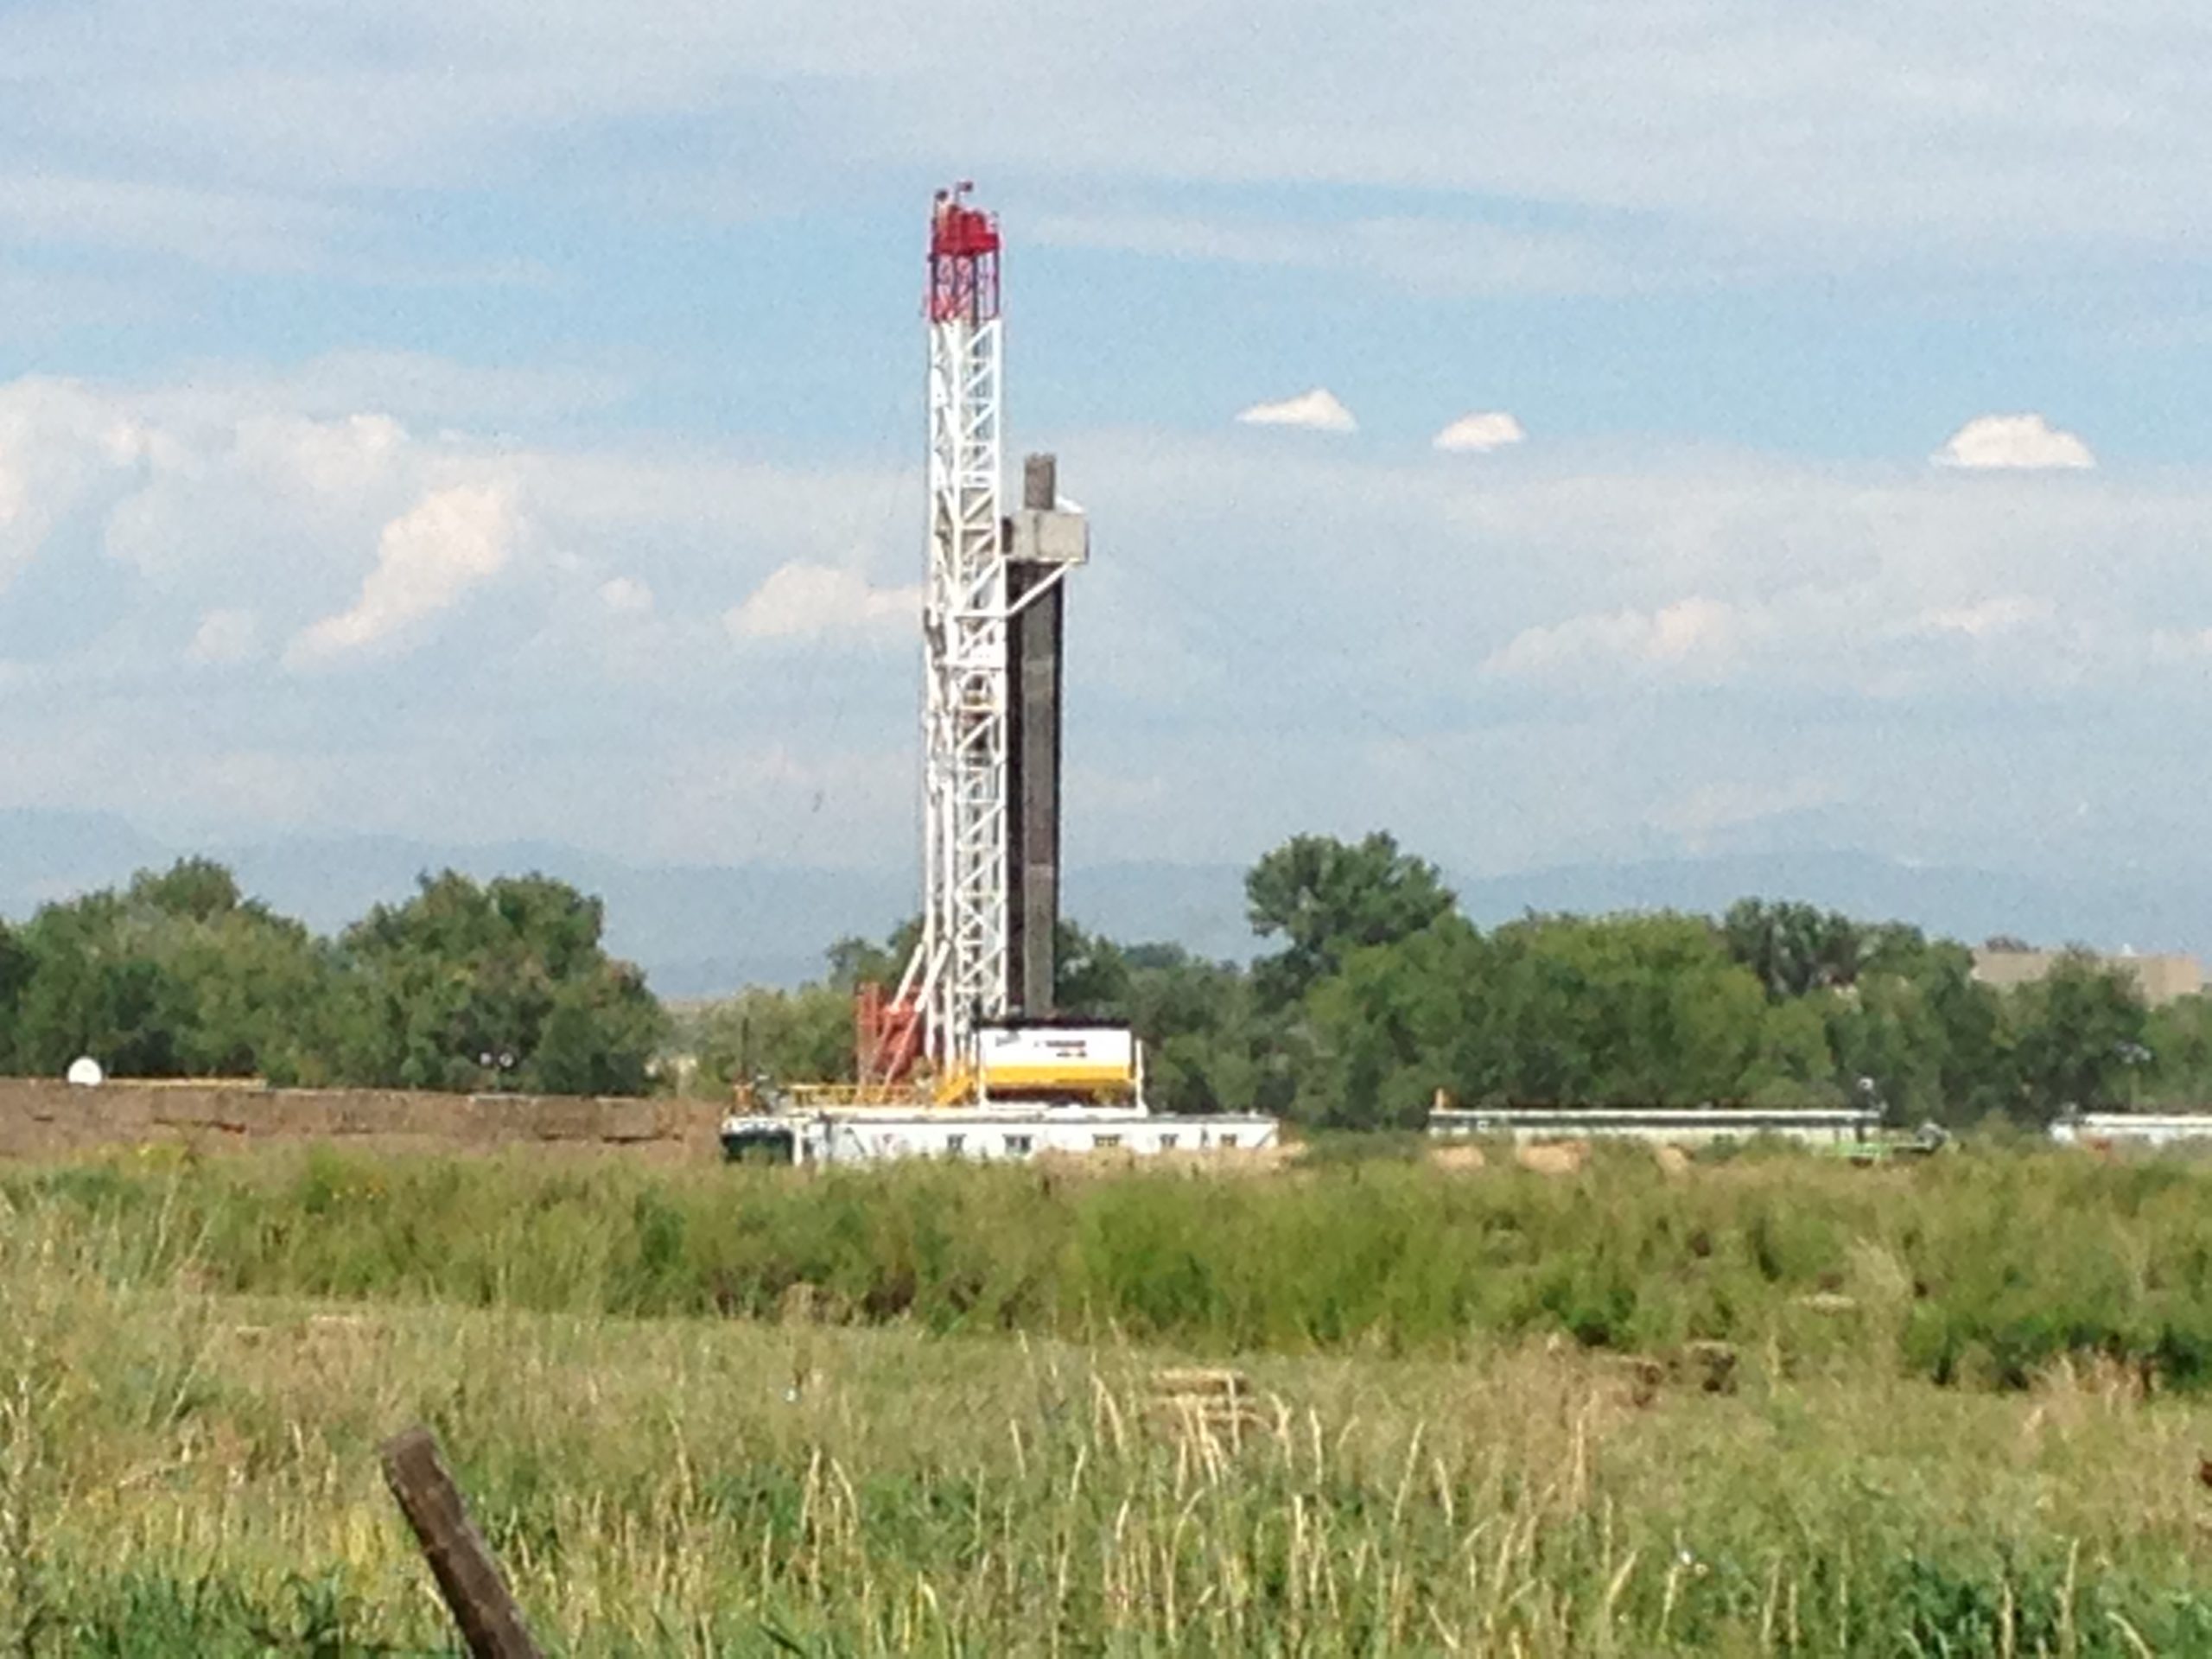 Sitio de fracking en Colorado, Estados Unidos. Foto: Phoenix Law en Flickr.